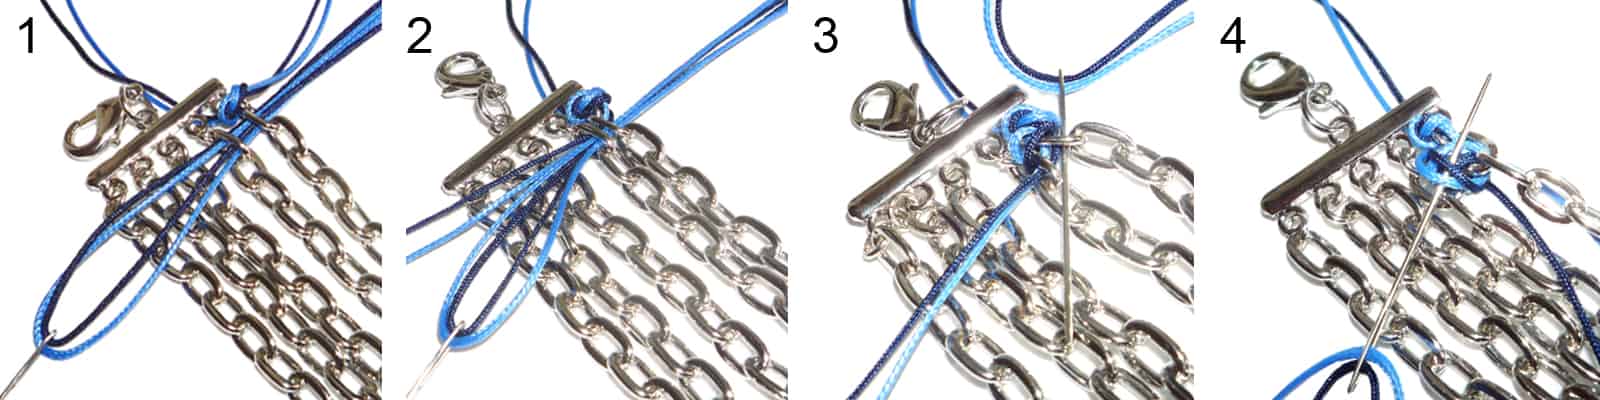 Anleitung Halskette mit bunten Satinbändern (Schritt 1 bis 4)